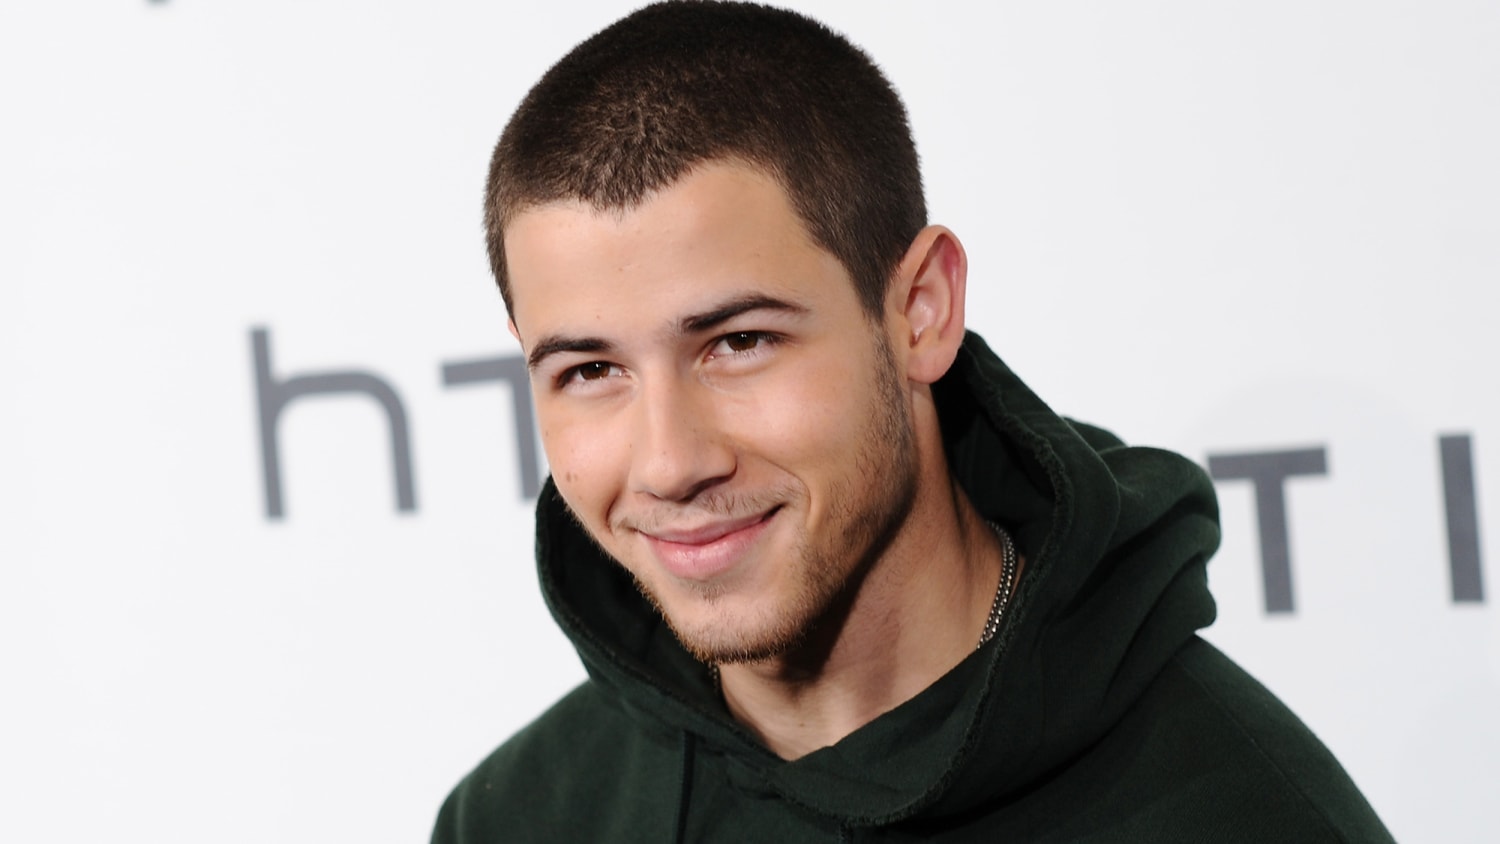 Nick Jonas rents home from landlord Ellen DeGeneres - TODAY.com